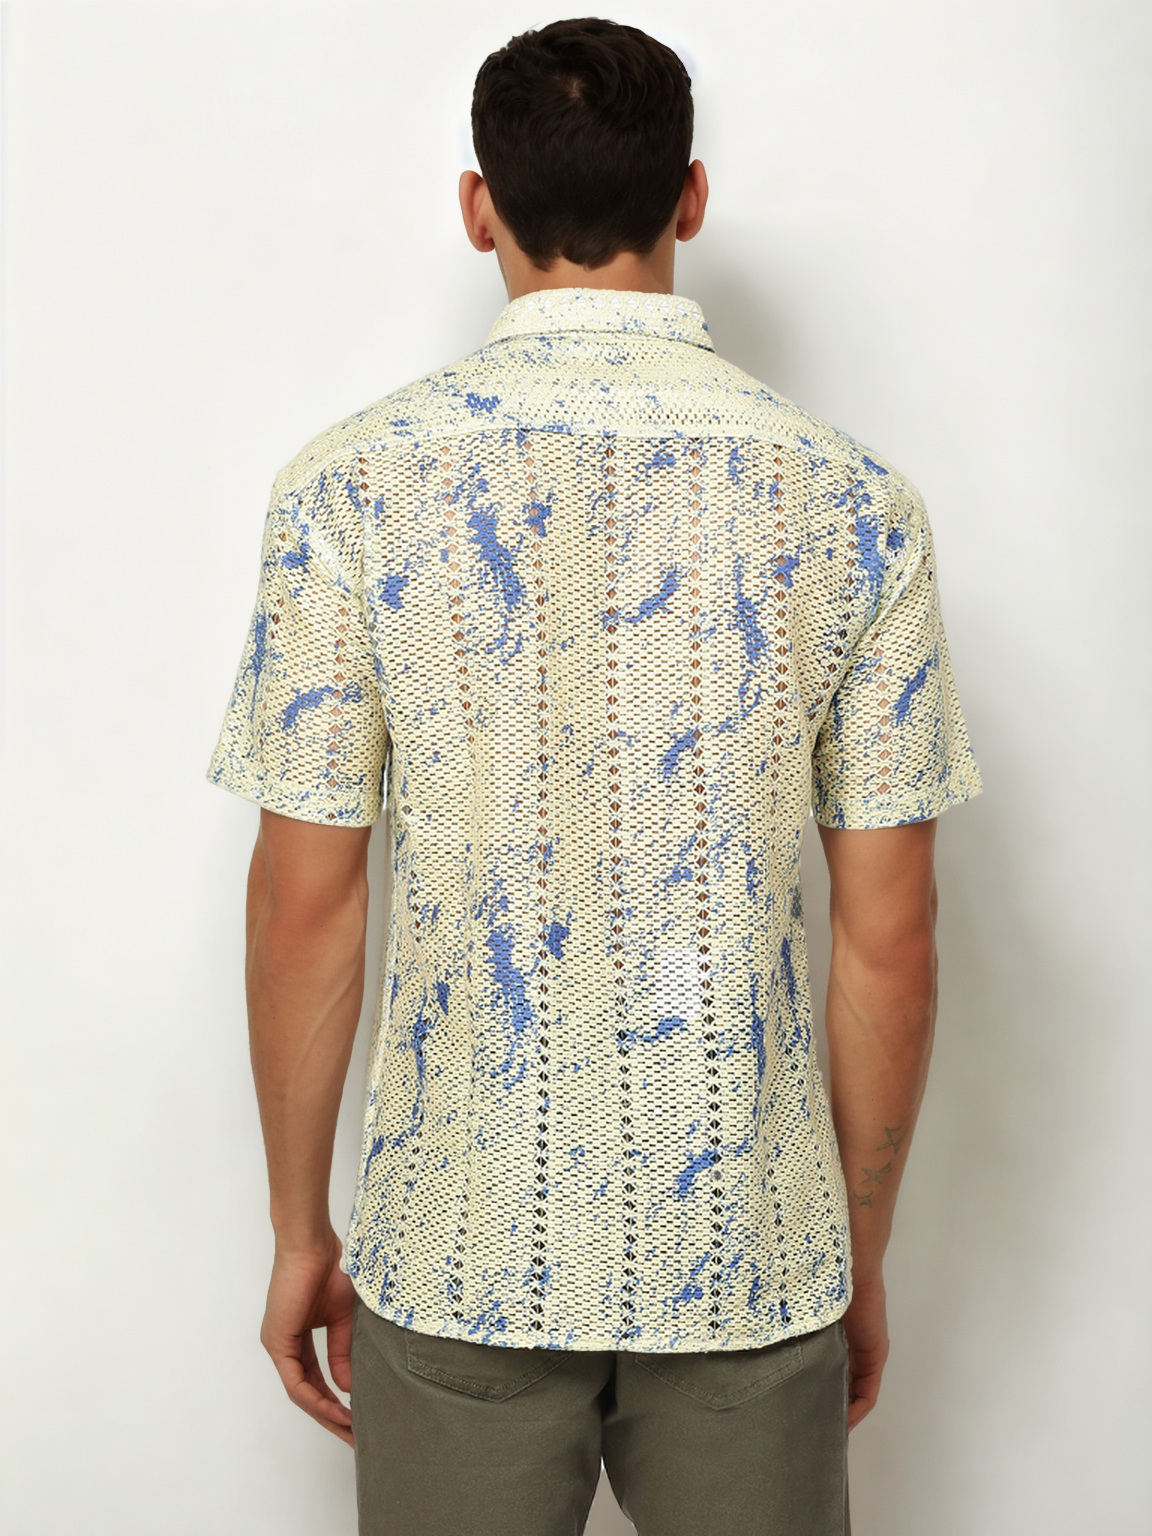 Hemsters Threaded Crochet Shirt Blue & White Color Shirt